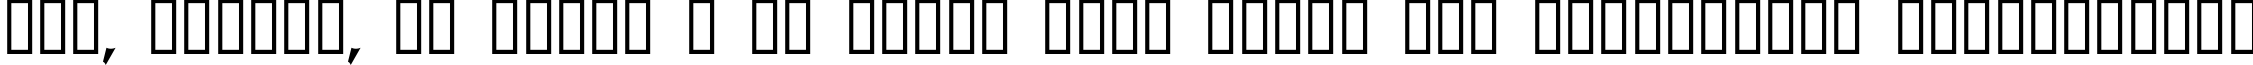 Пример написания шрифтом GB Shinto Regular текста на украинском